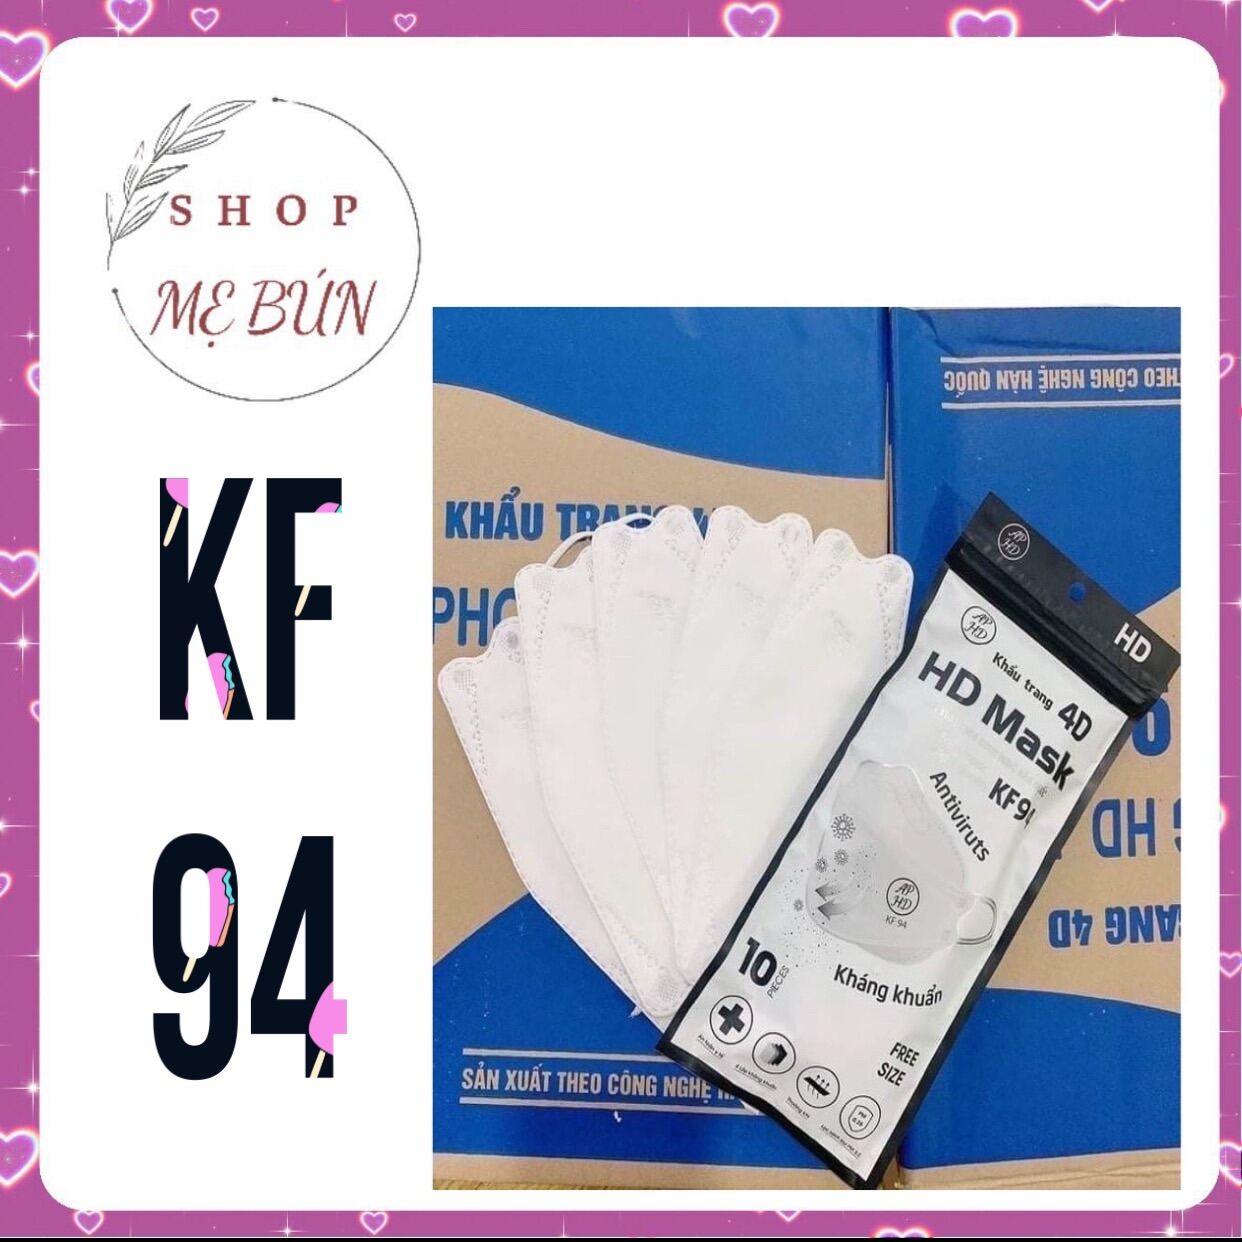 Giá bán Khẩu trang KF94, 4 lớp An Phong HD Mask (Bịch 10 cái)